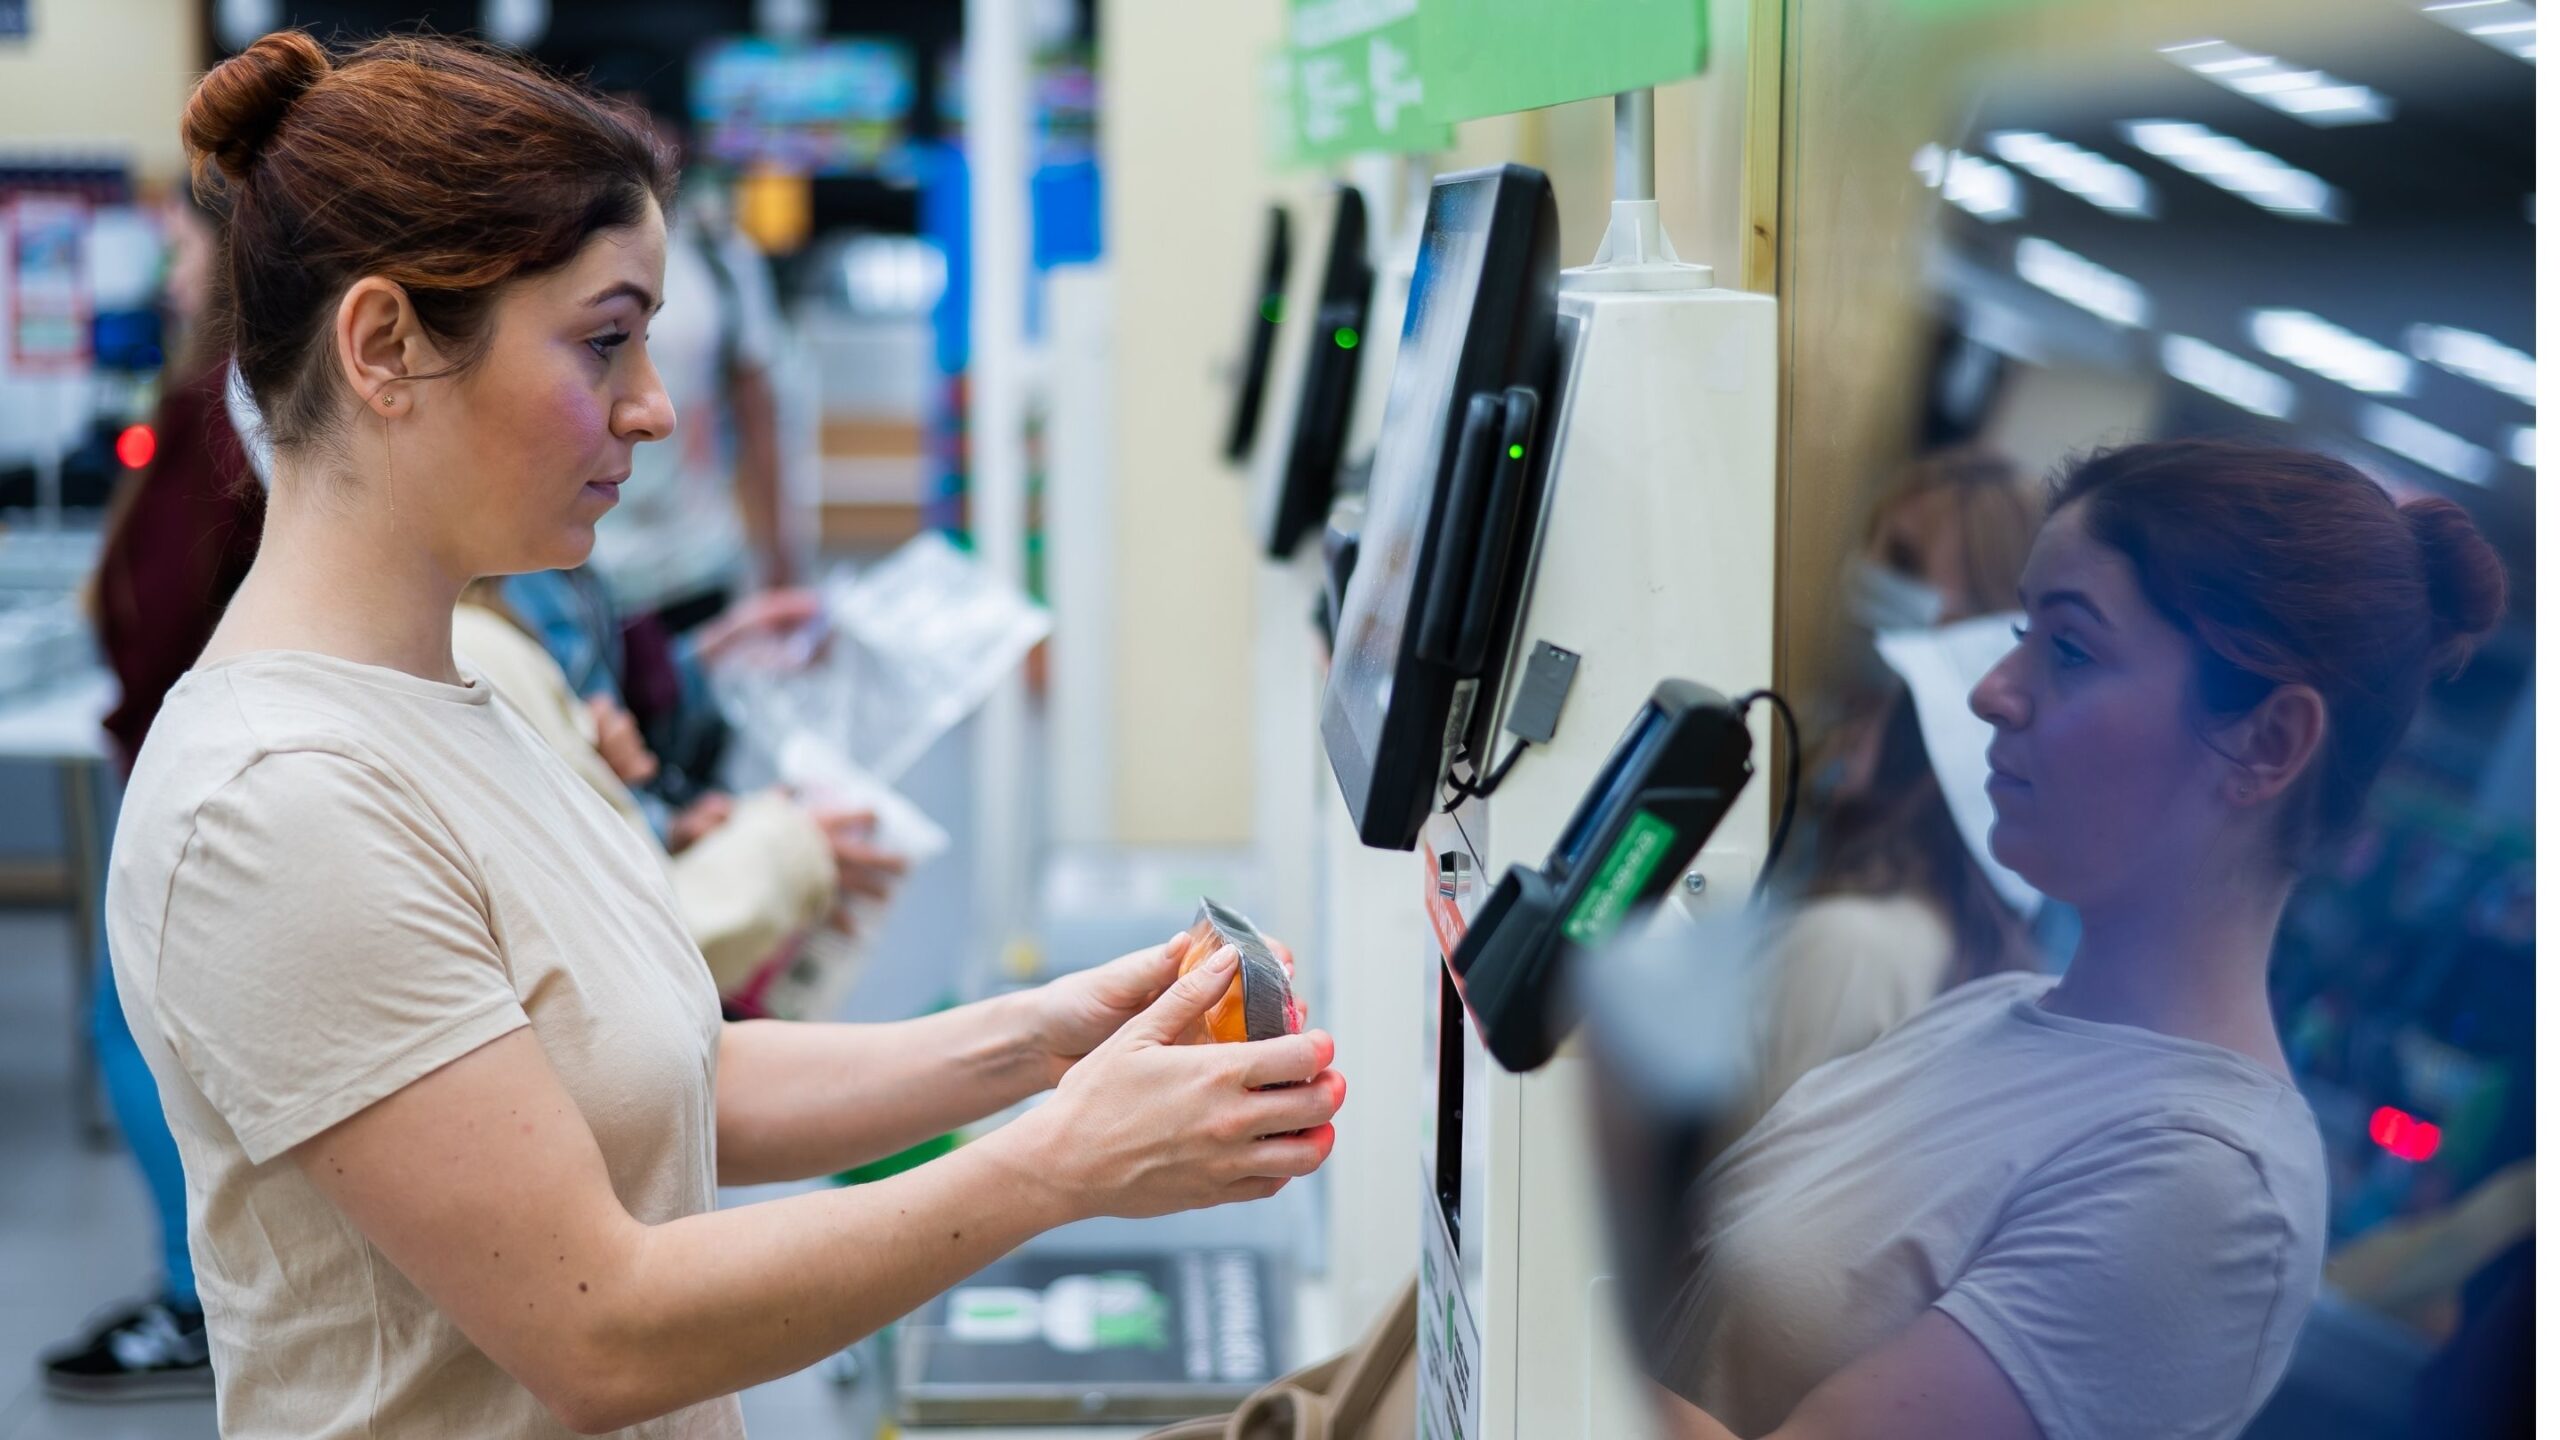 ¿Son realmente accesibles las cajas de pago automático de las tiendas?